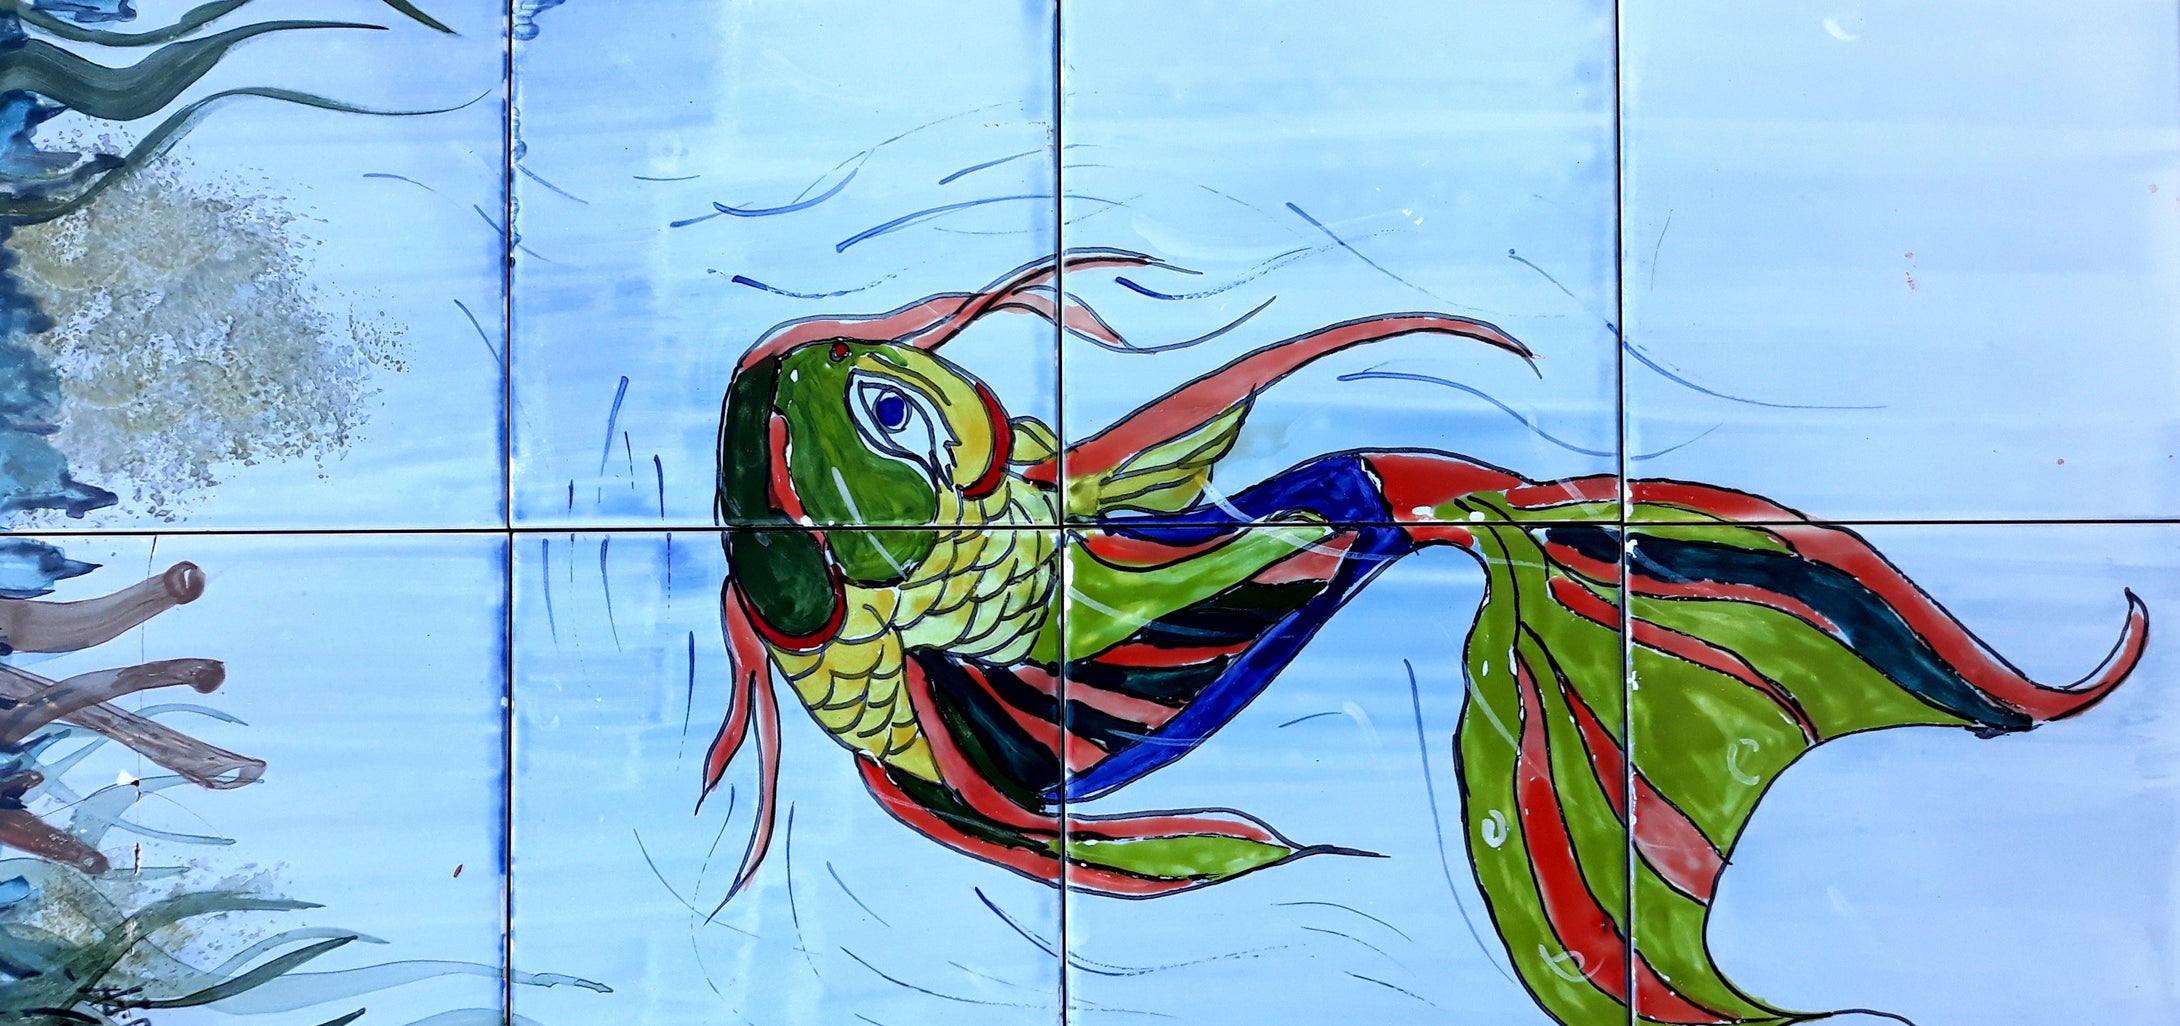 Fish Design Tile Mural